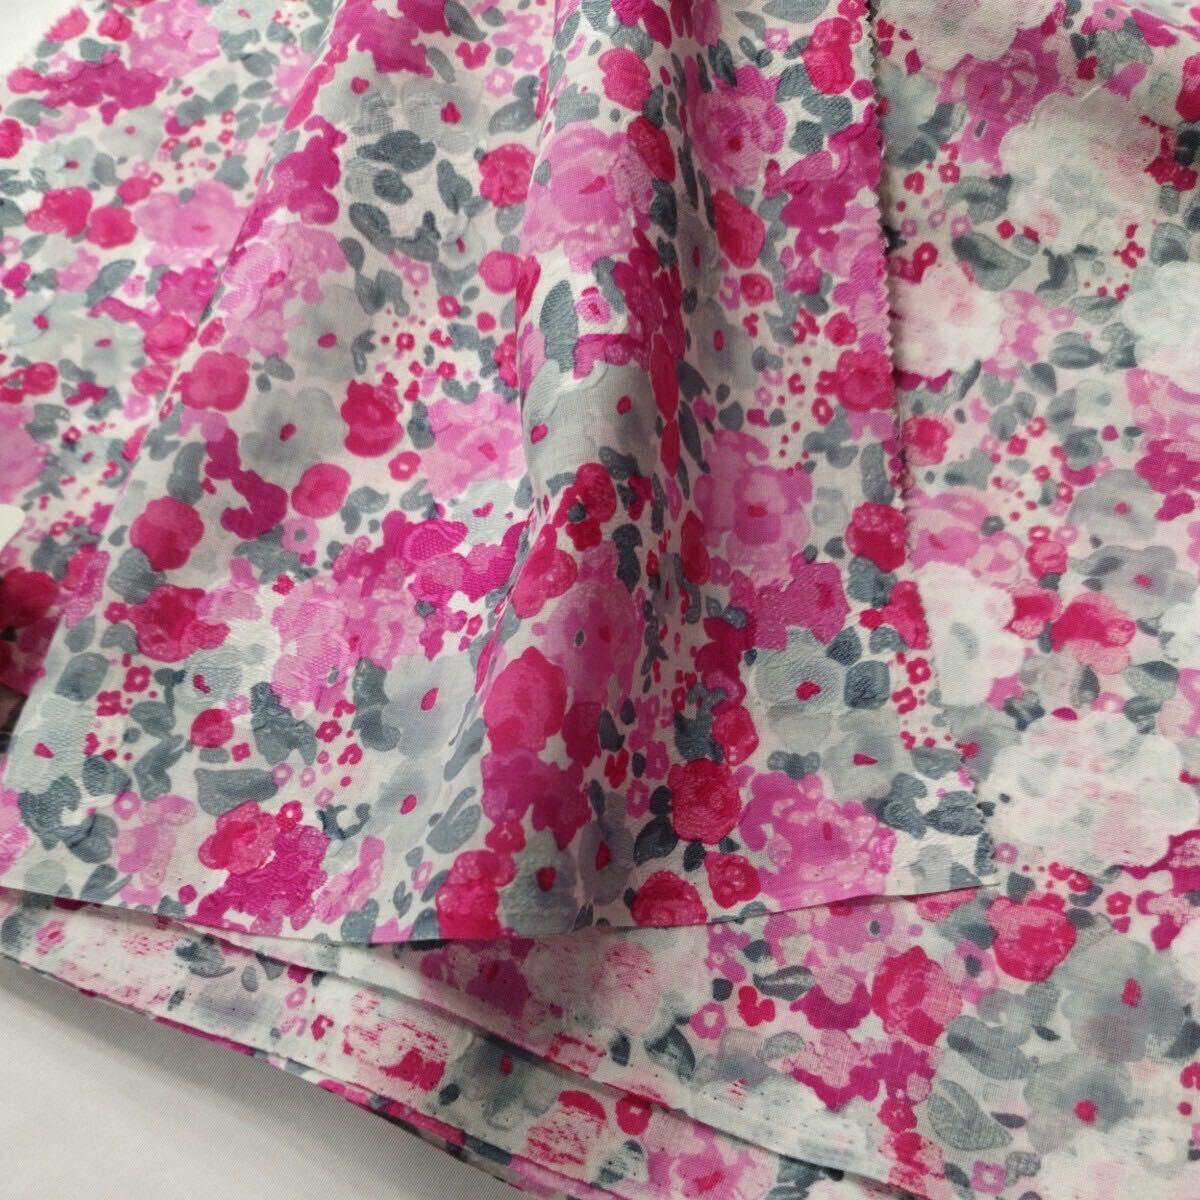 イタリア製高級婦人服地 ピンク系とグレーの水彩風花柄　コットン100%のジャガード生地 薄手 多少の透け感あり 90cm幅×3.5m 0412-313(6)_画像1